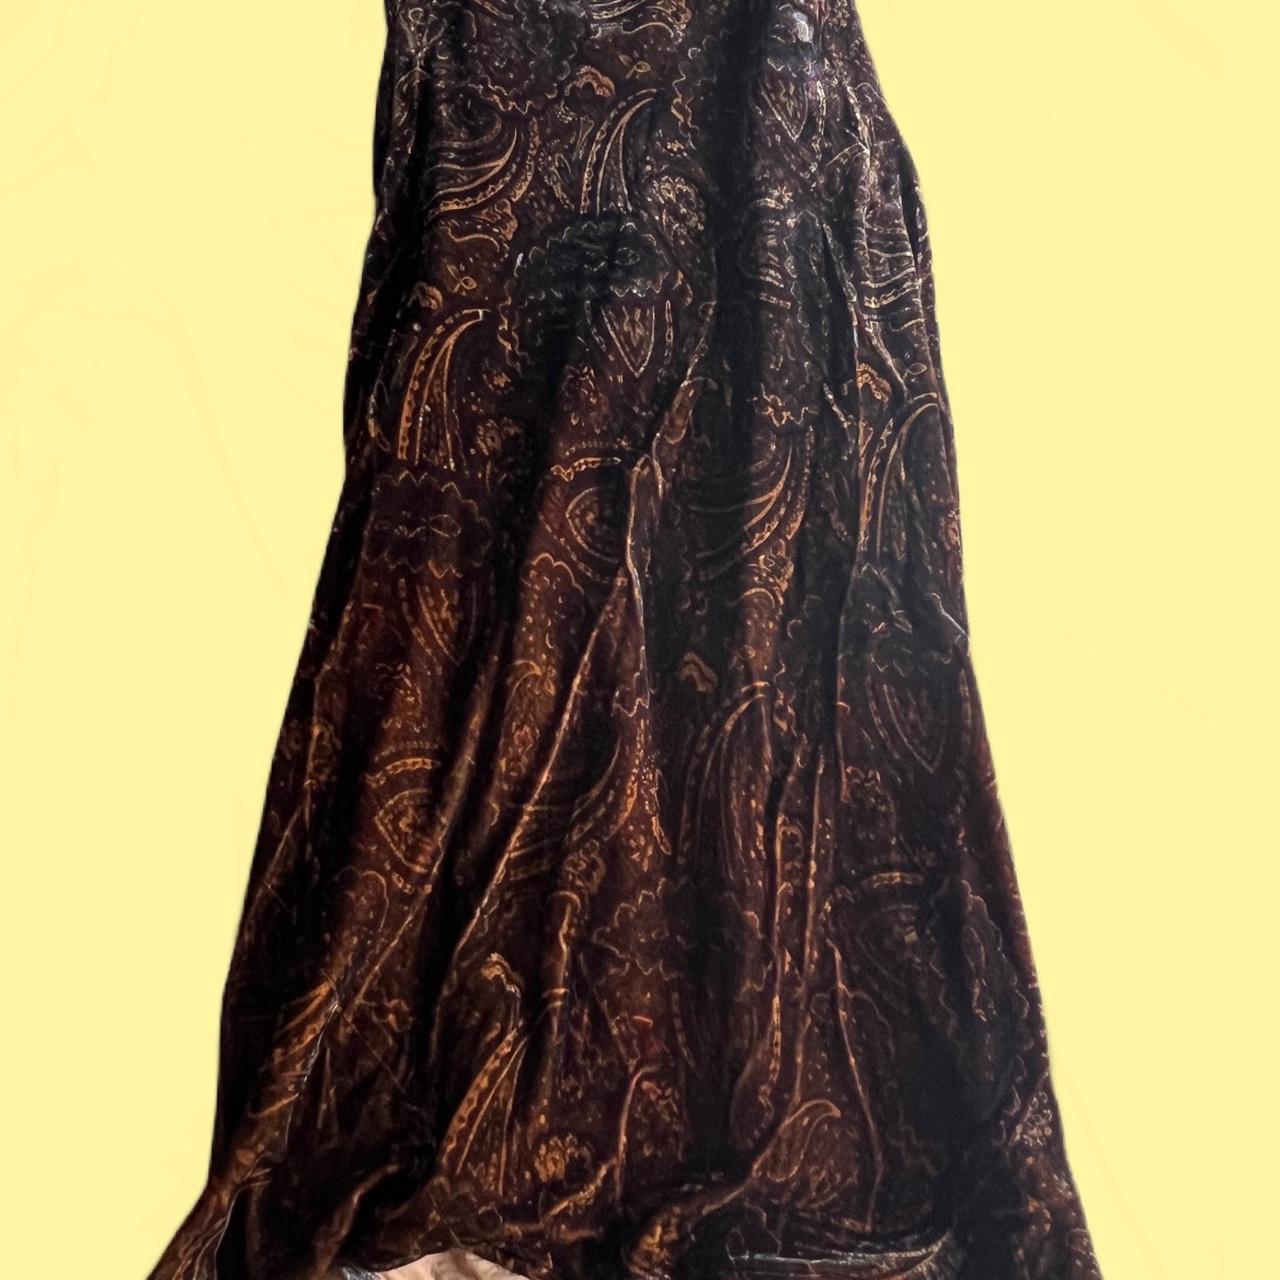 RALPH LAUREN maxi patterned brown skirt (velvet... - Depop